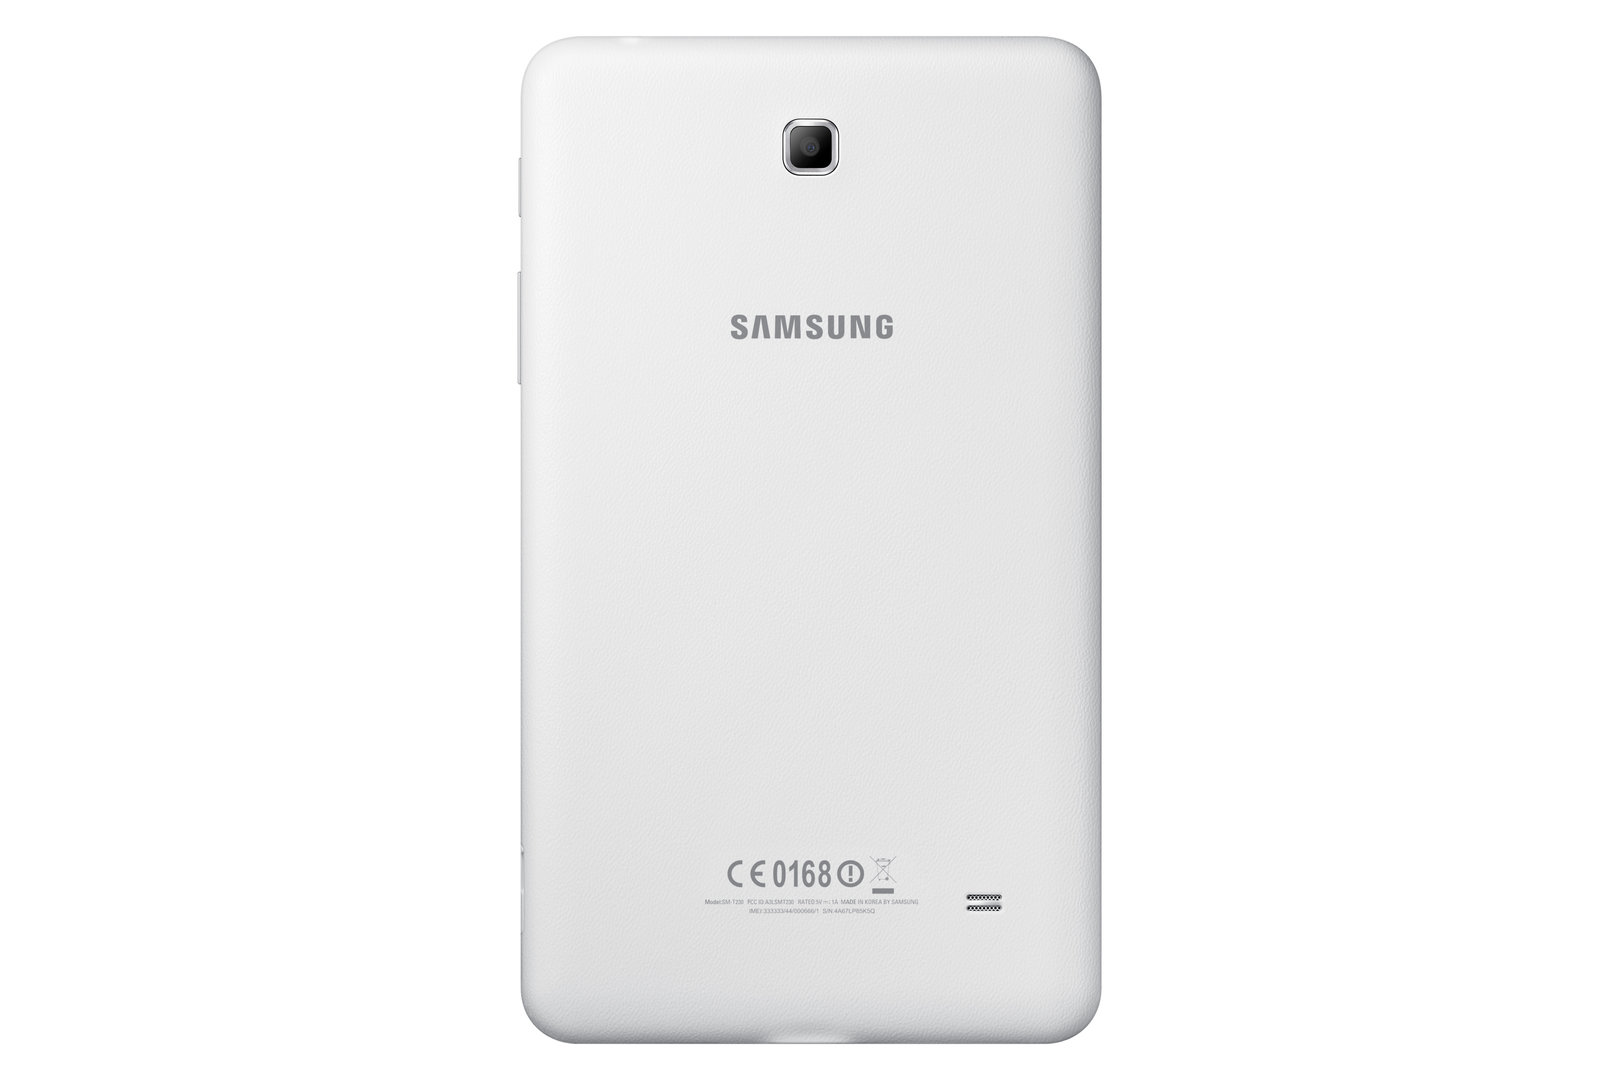 Samsung Galaxy Tab4 7.0